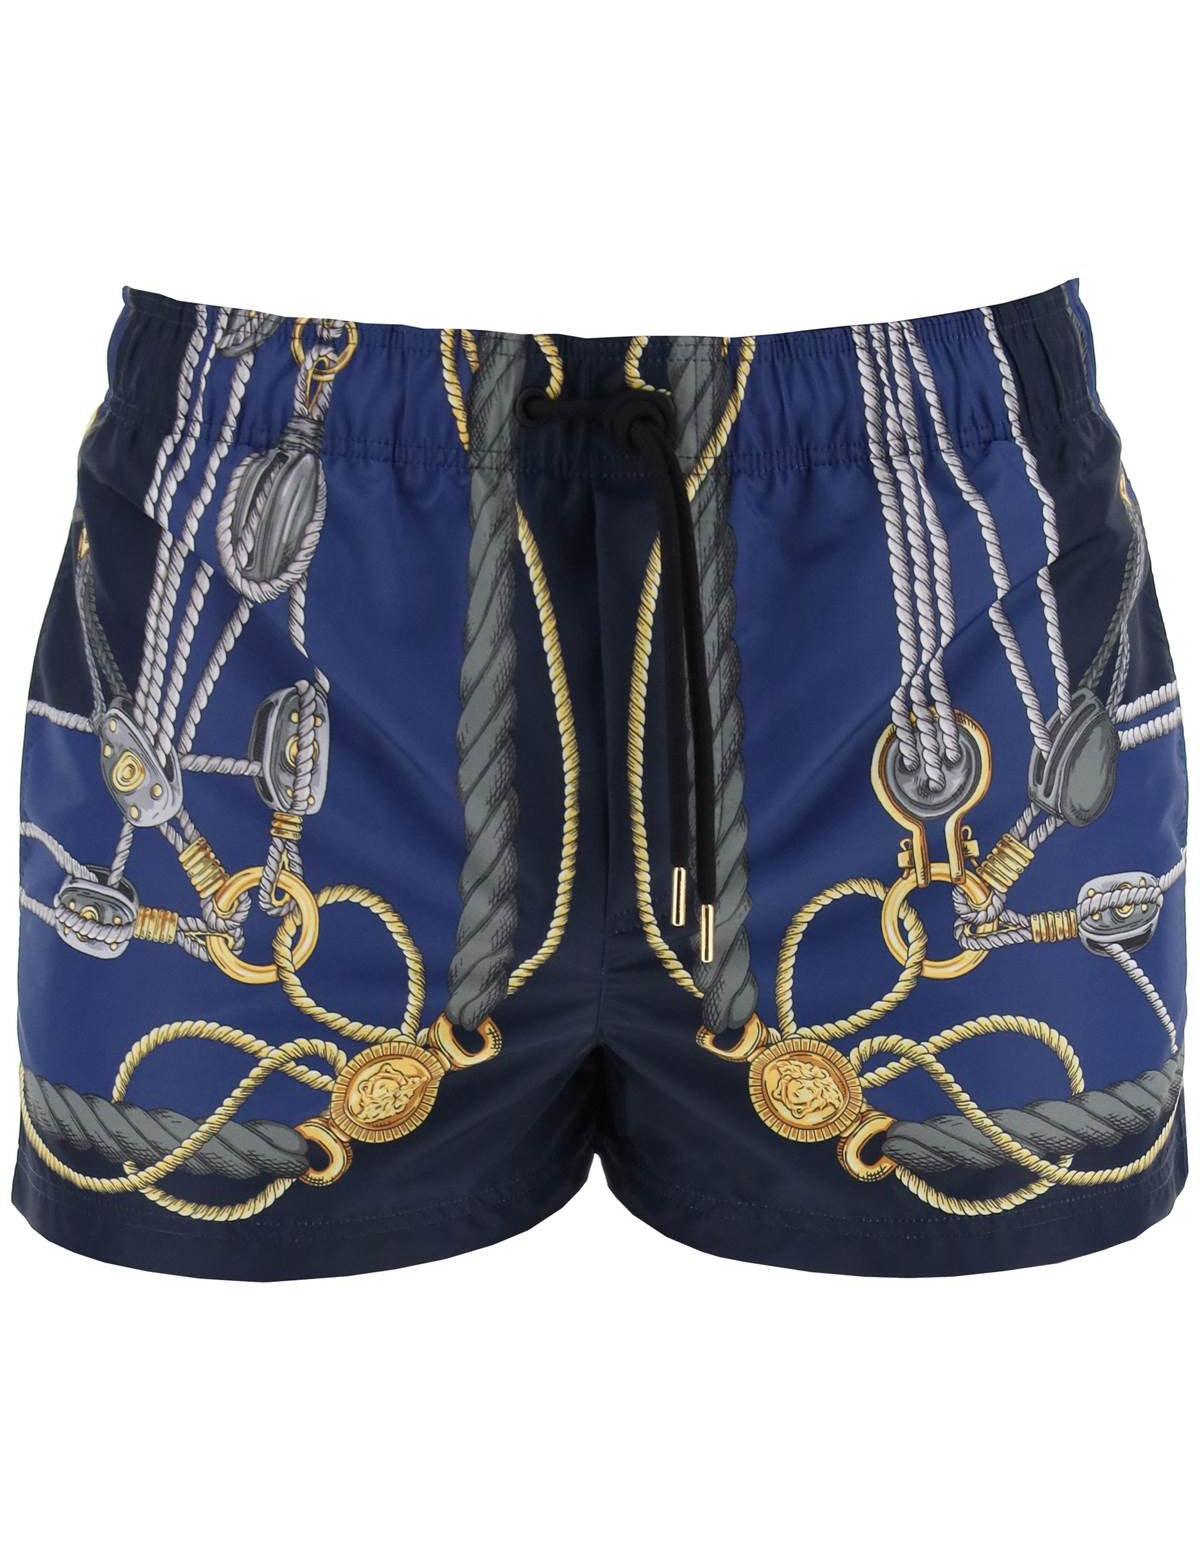 versace-swim-trunks-by-versace.jpg